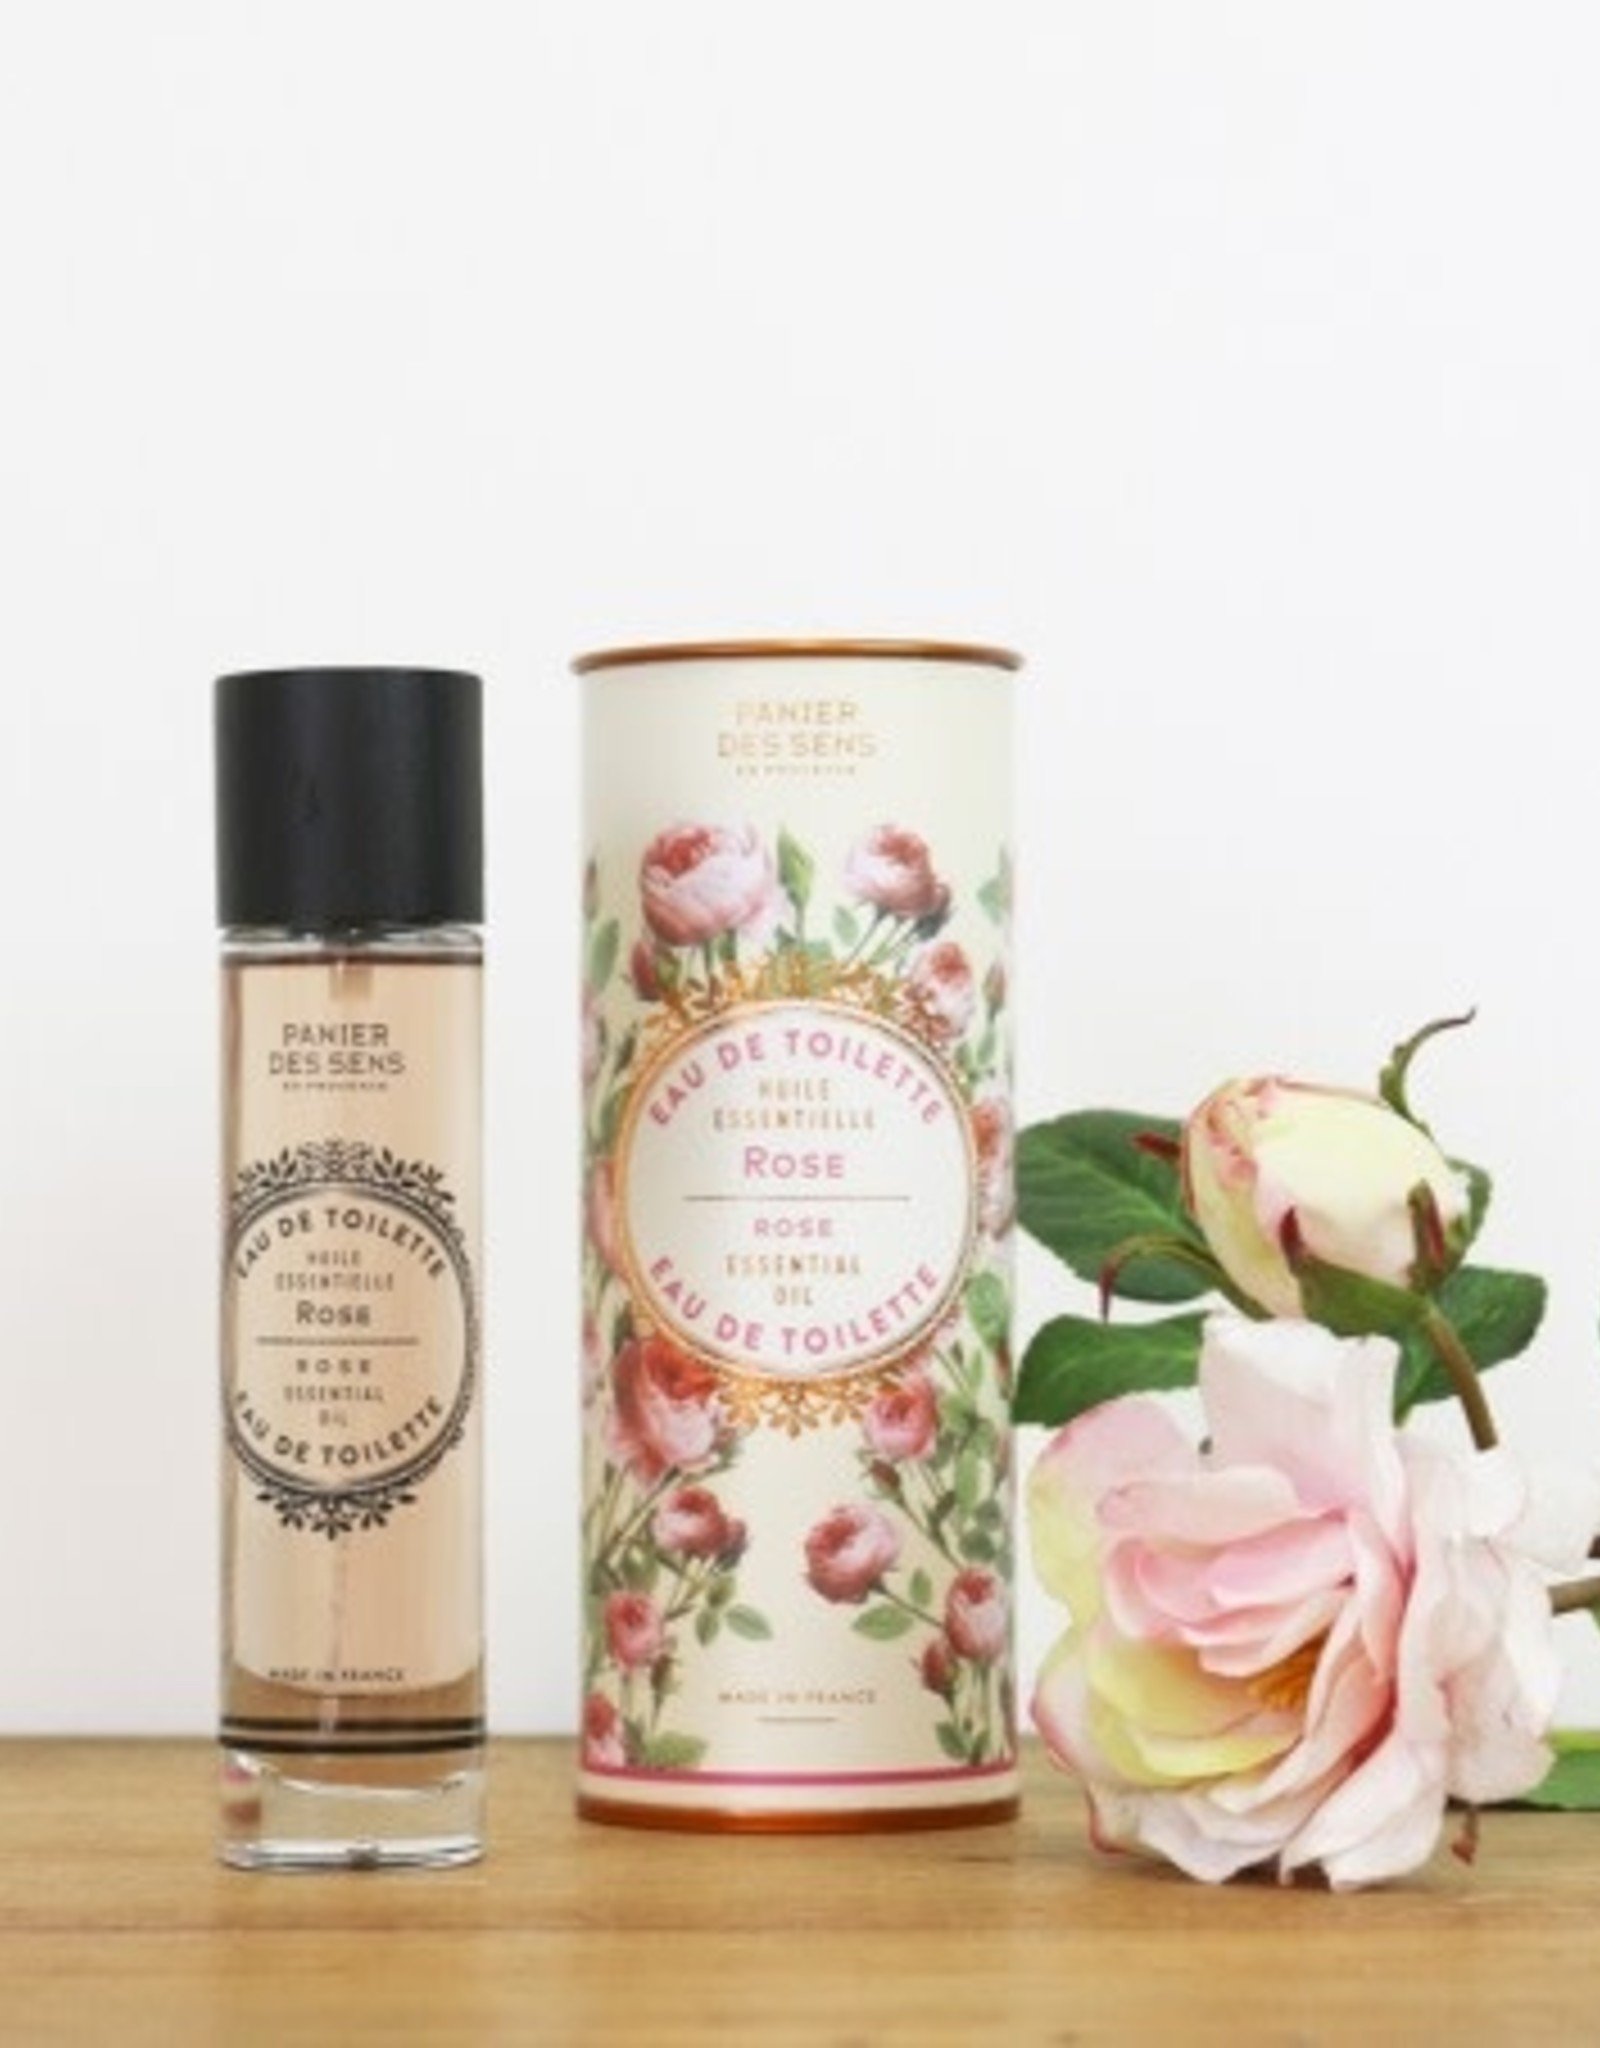 Panier des Sens Panier des Sens Parfums - Rose - 50ml